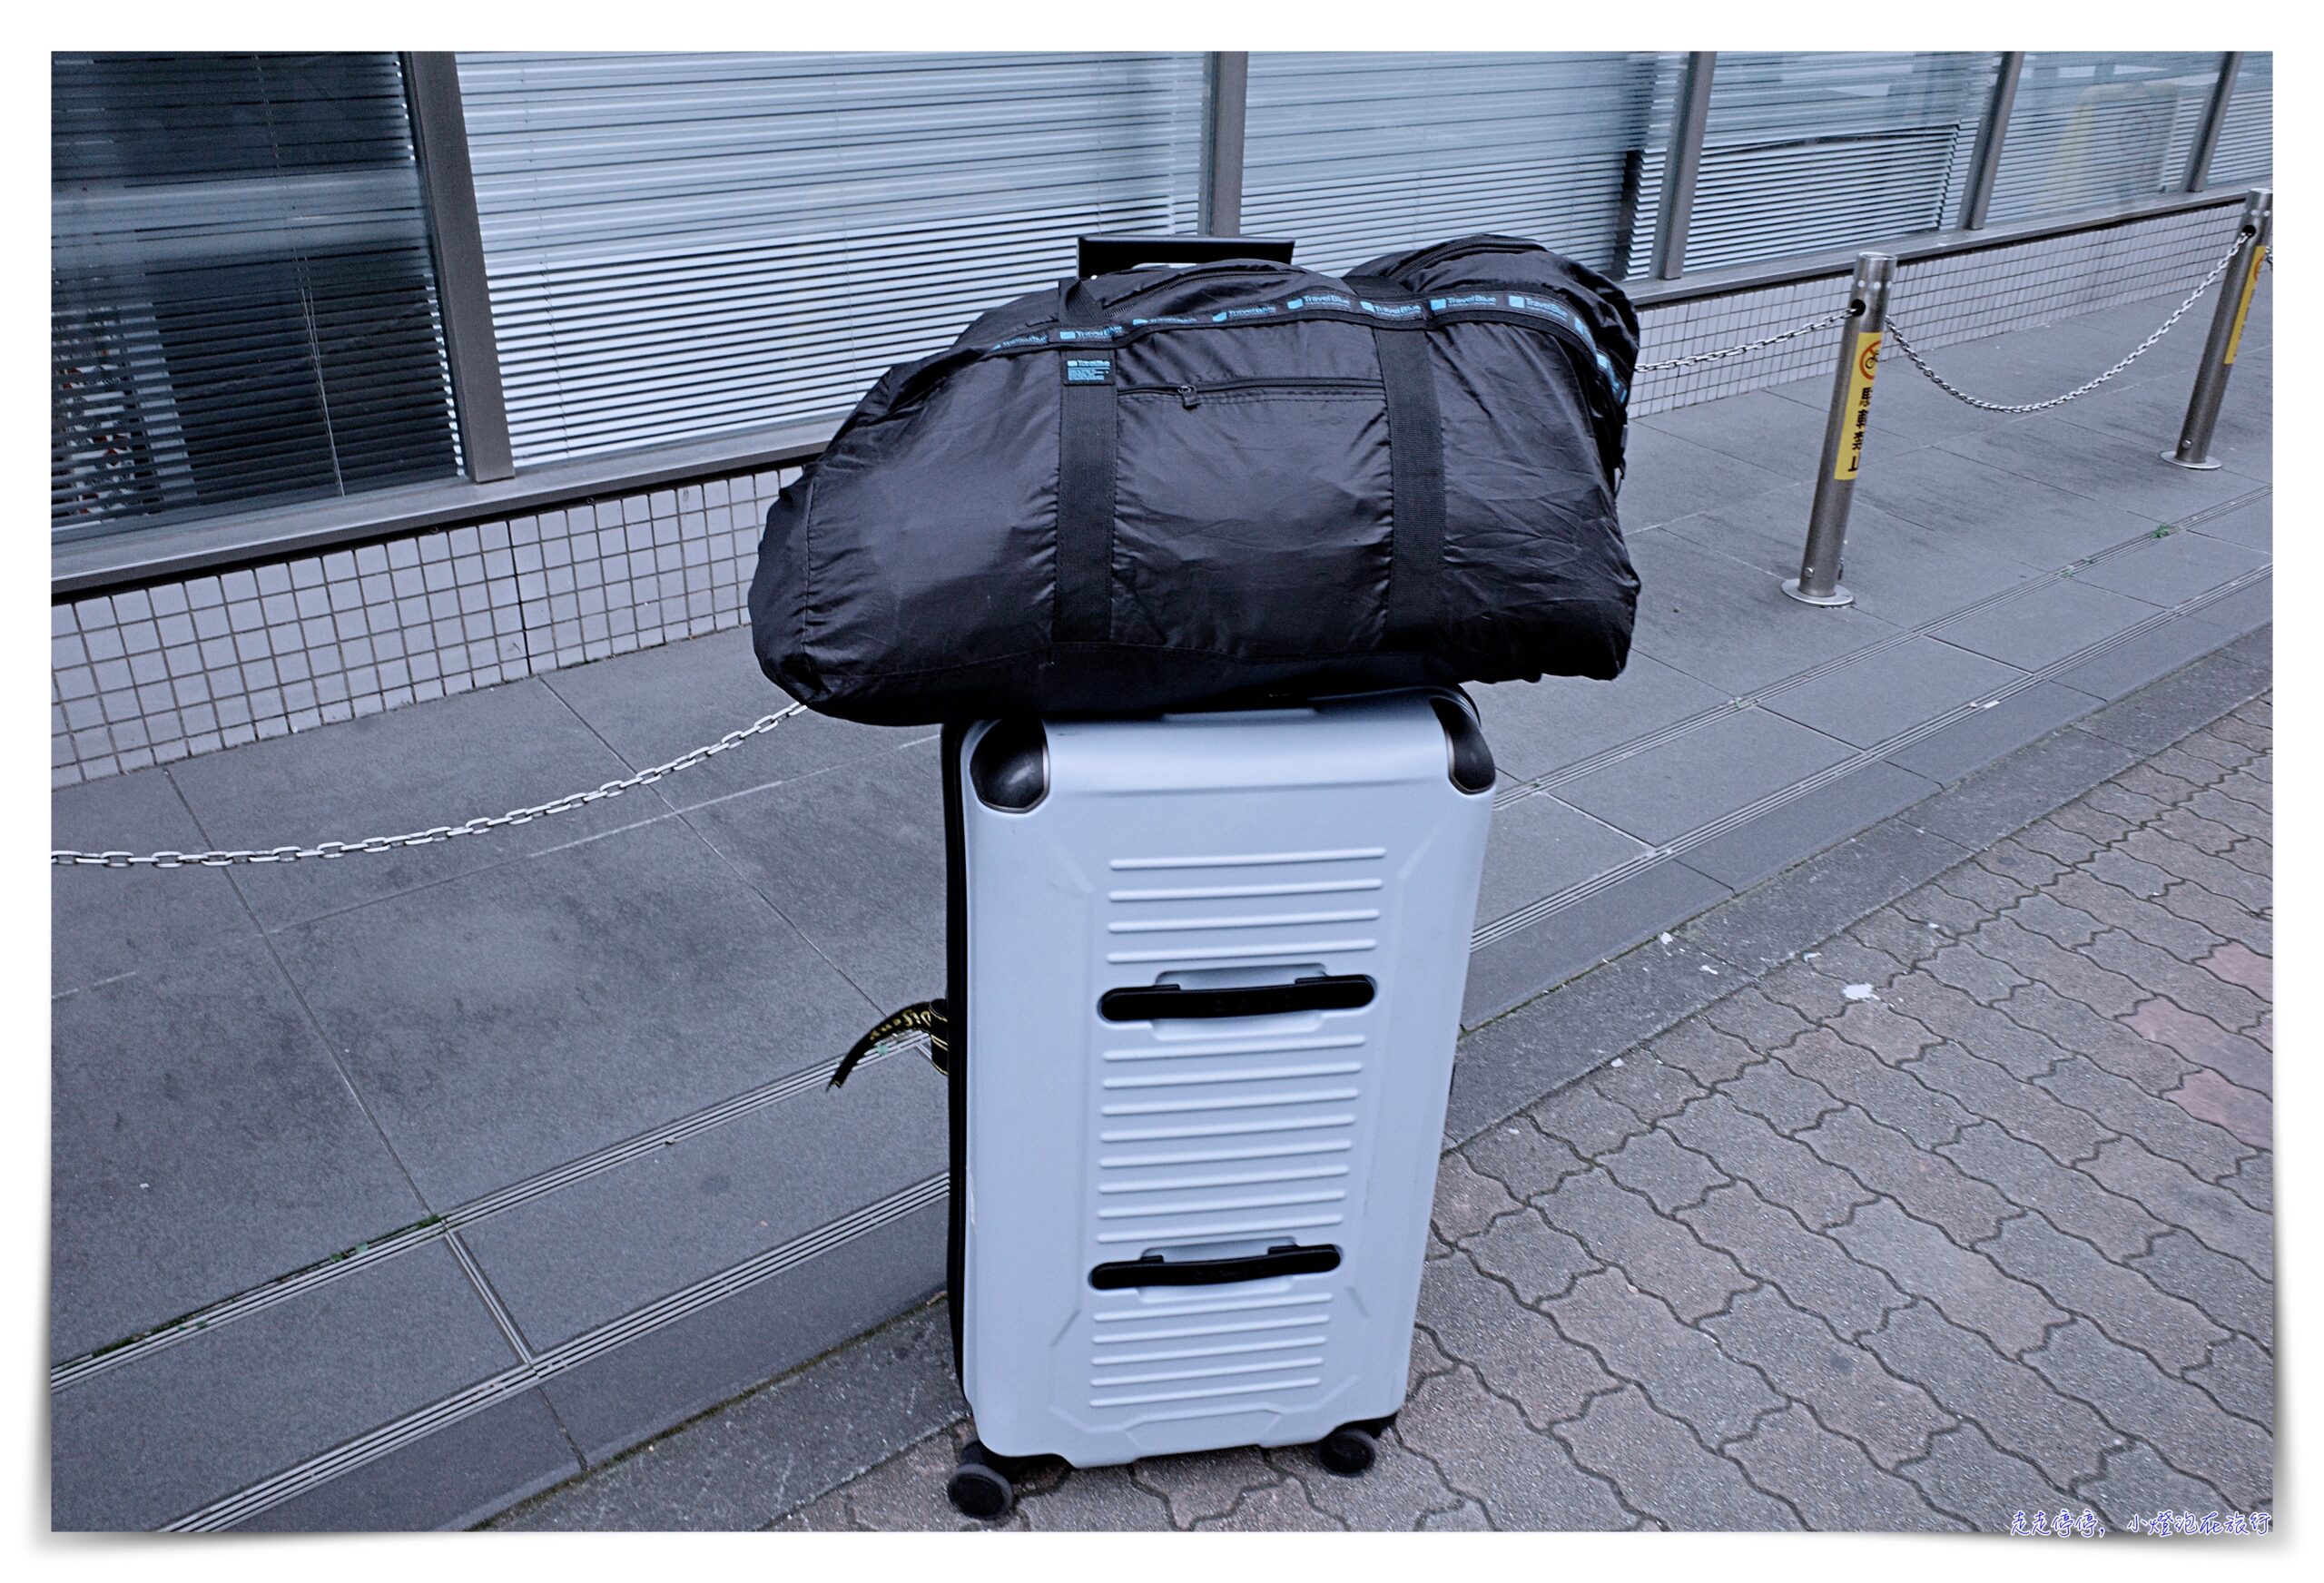 歐洲行李寄存/歐洲行李寄放怎麼找？Bounce、radical storage，兩個網站馬上查詢價格跟位置